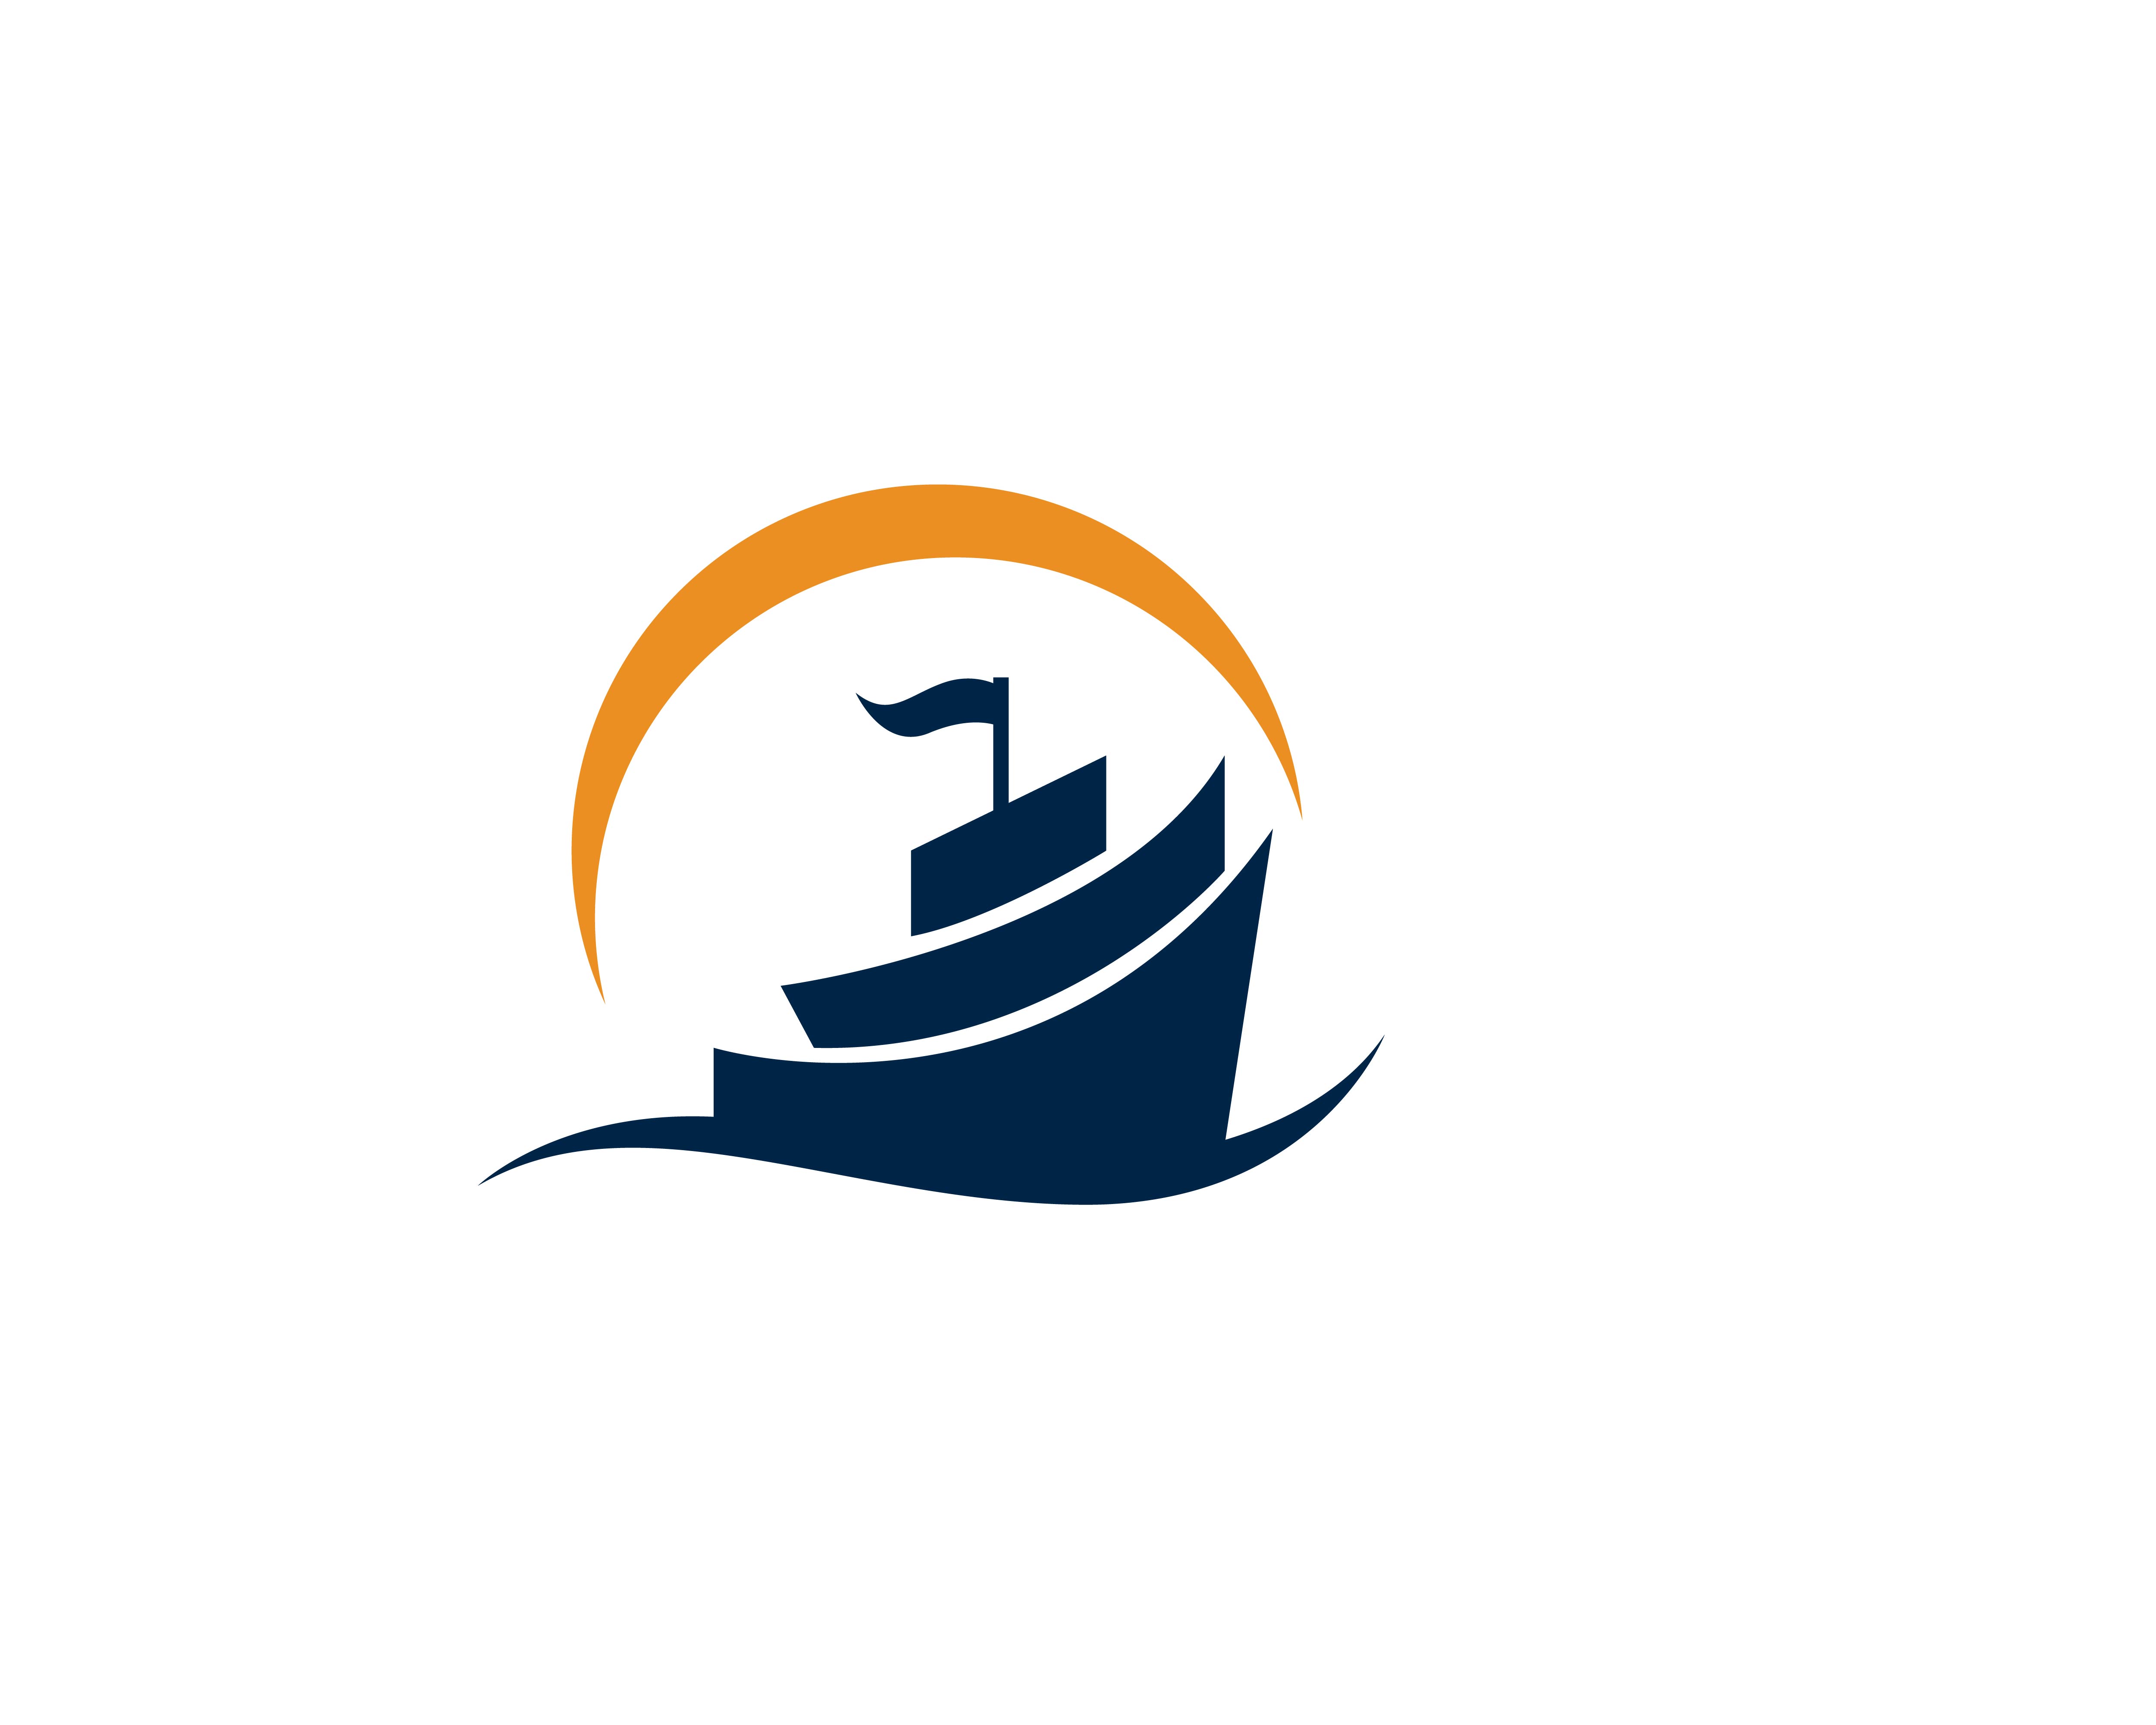 logo of cruise